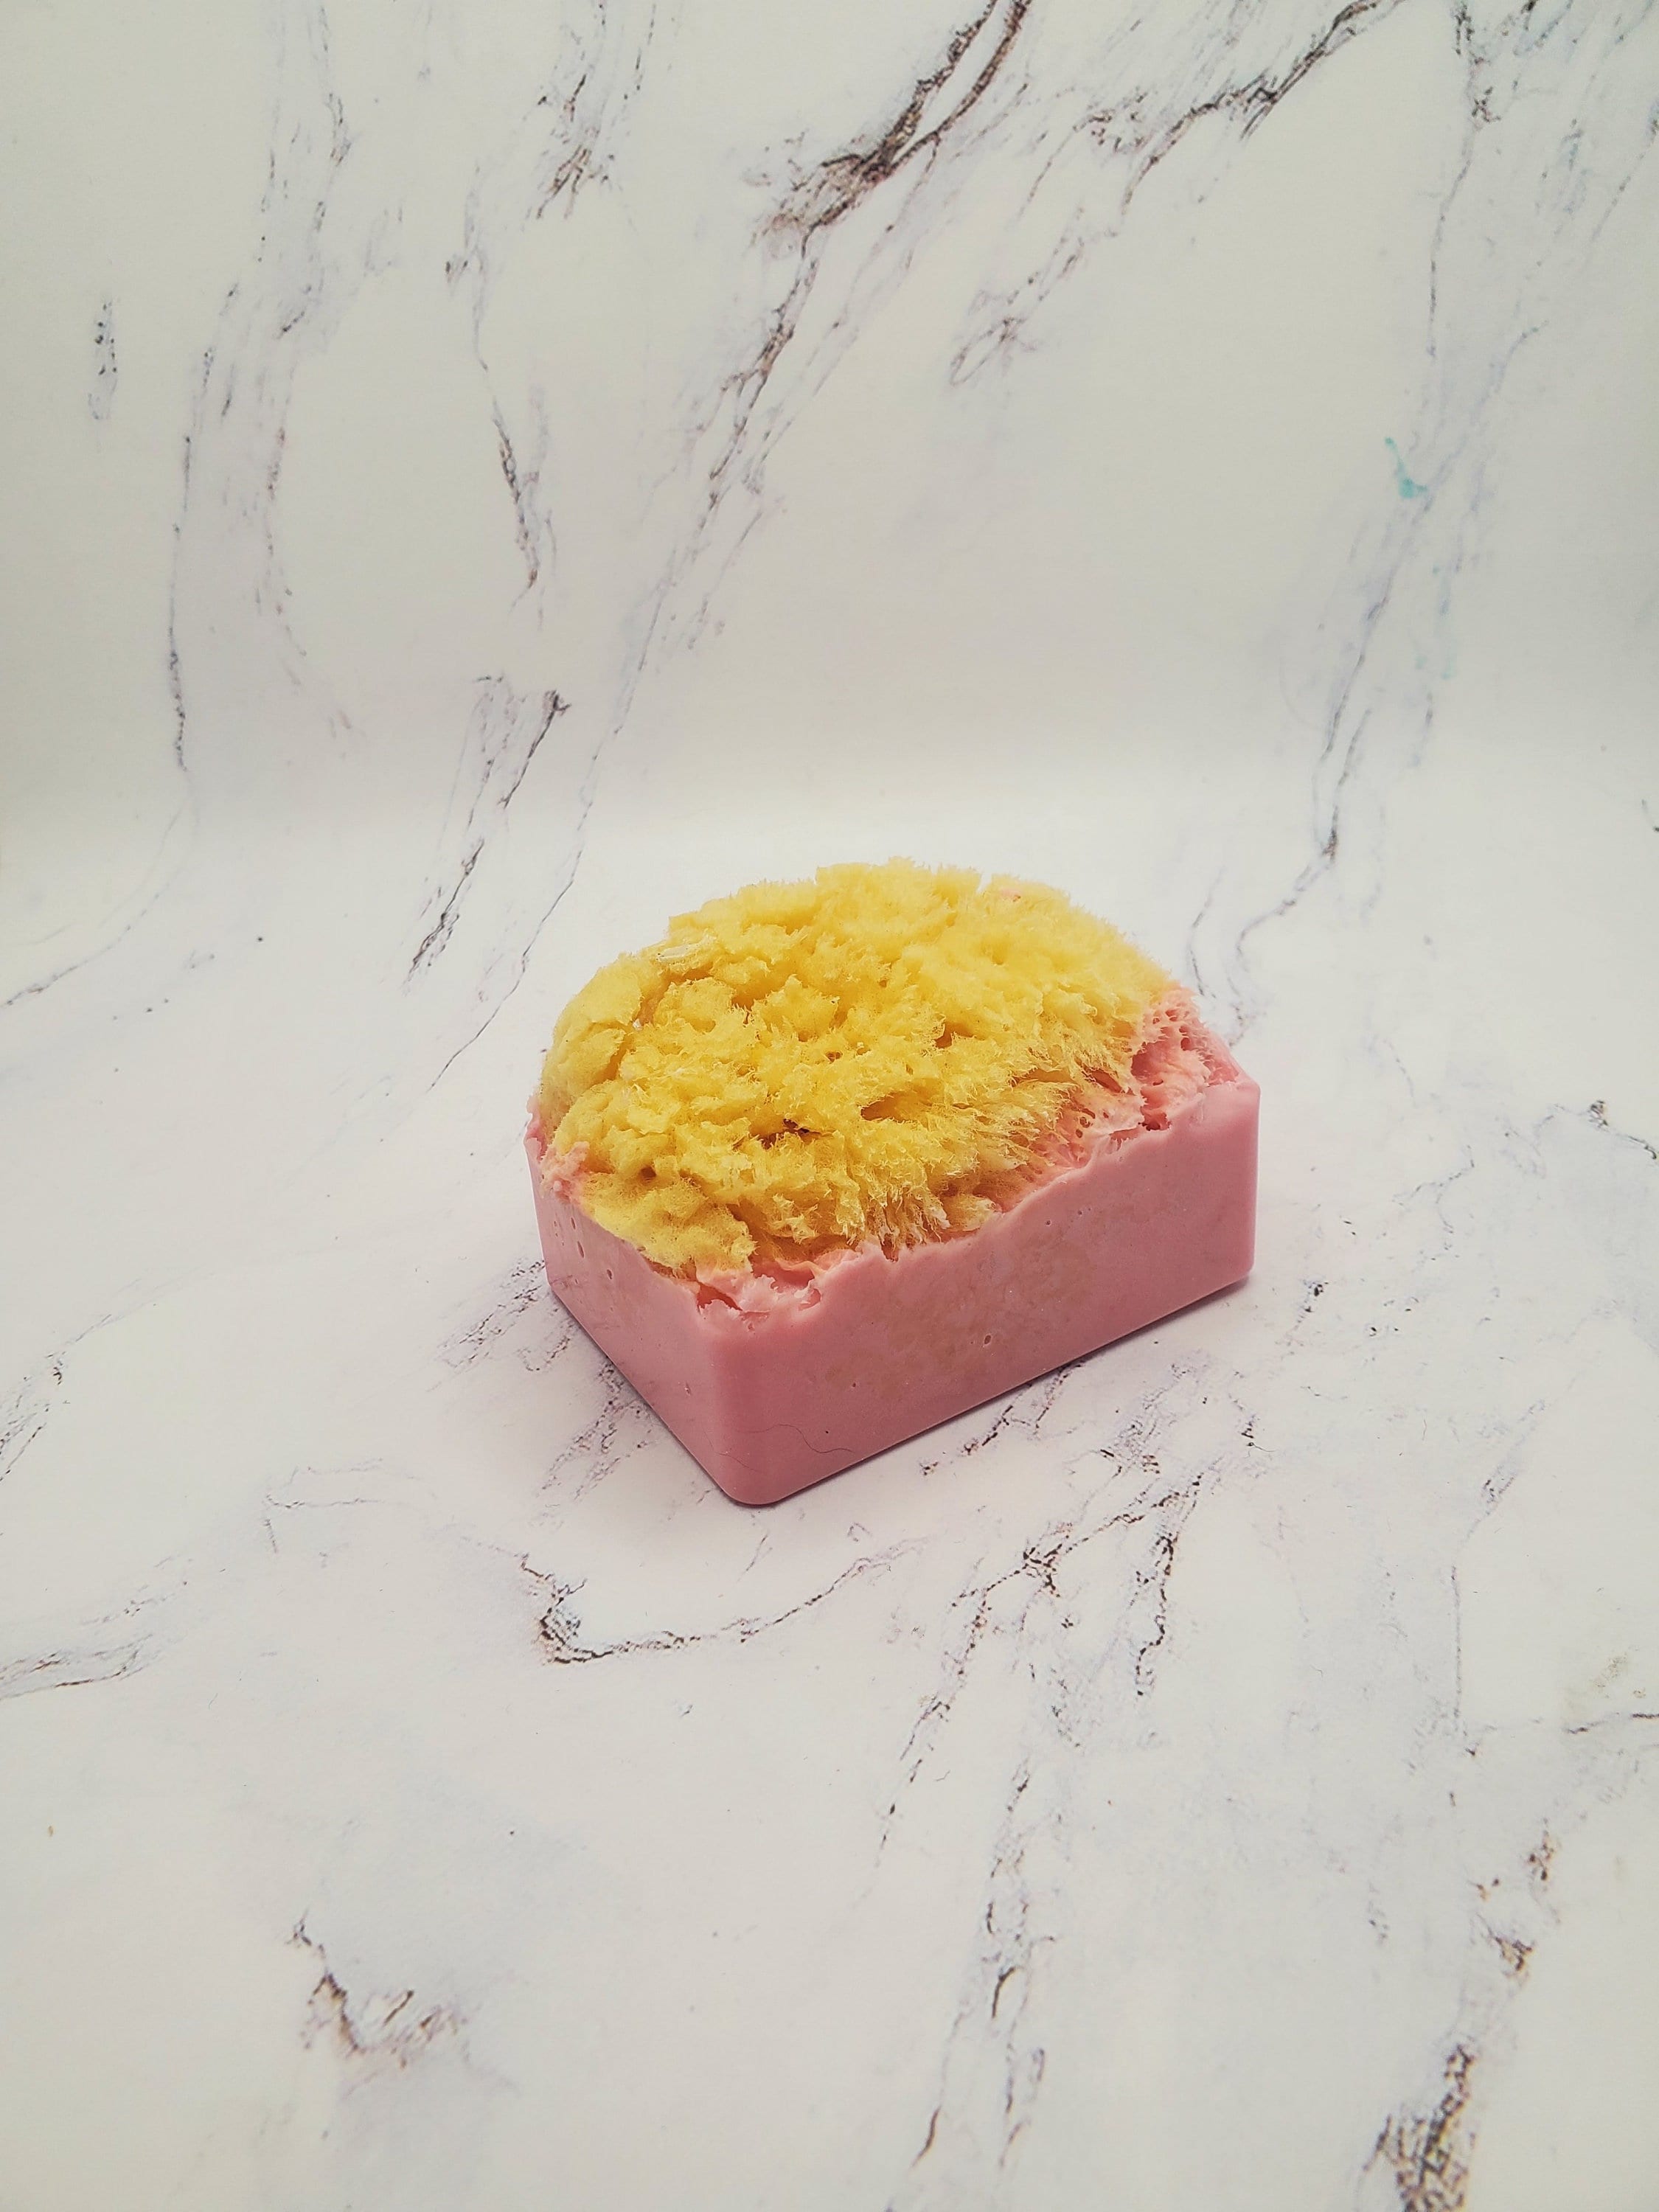 Dead Sea Sponges – Courageous Soap